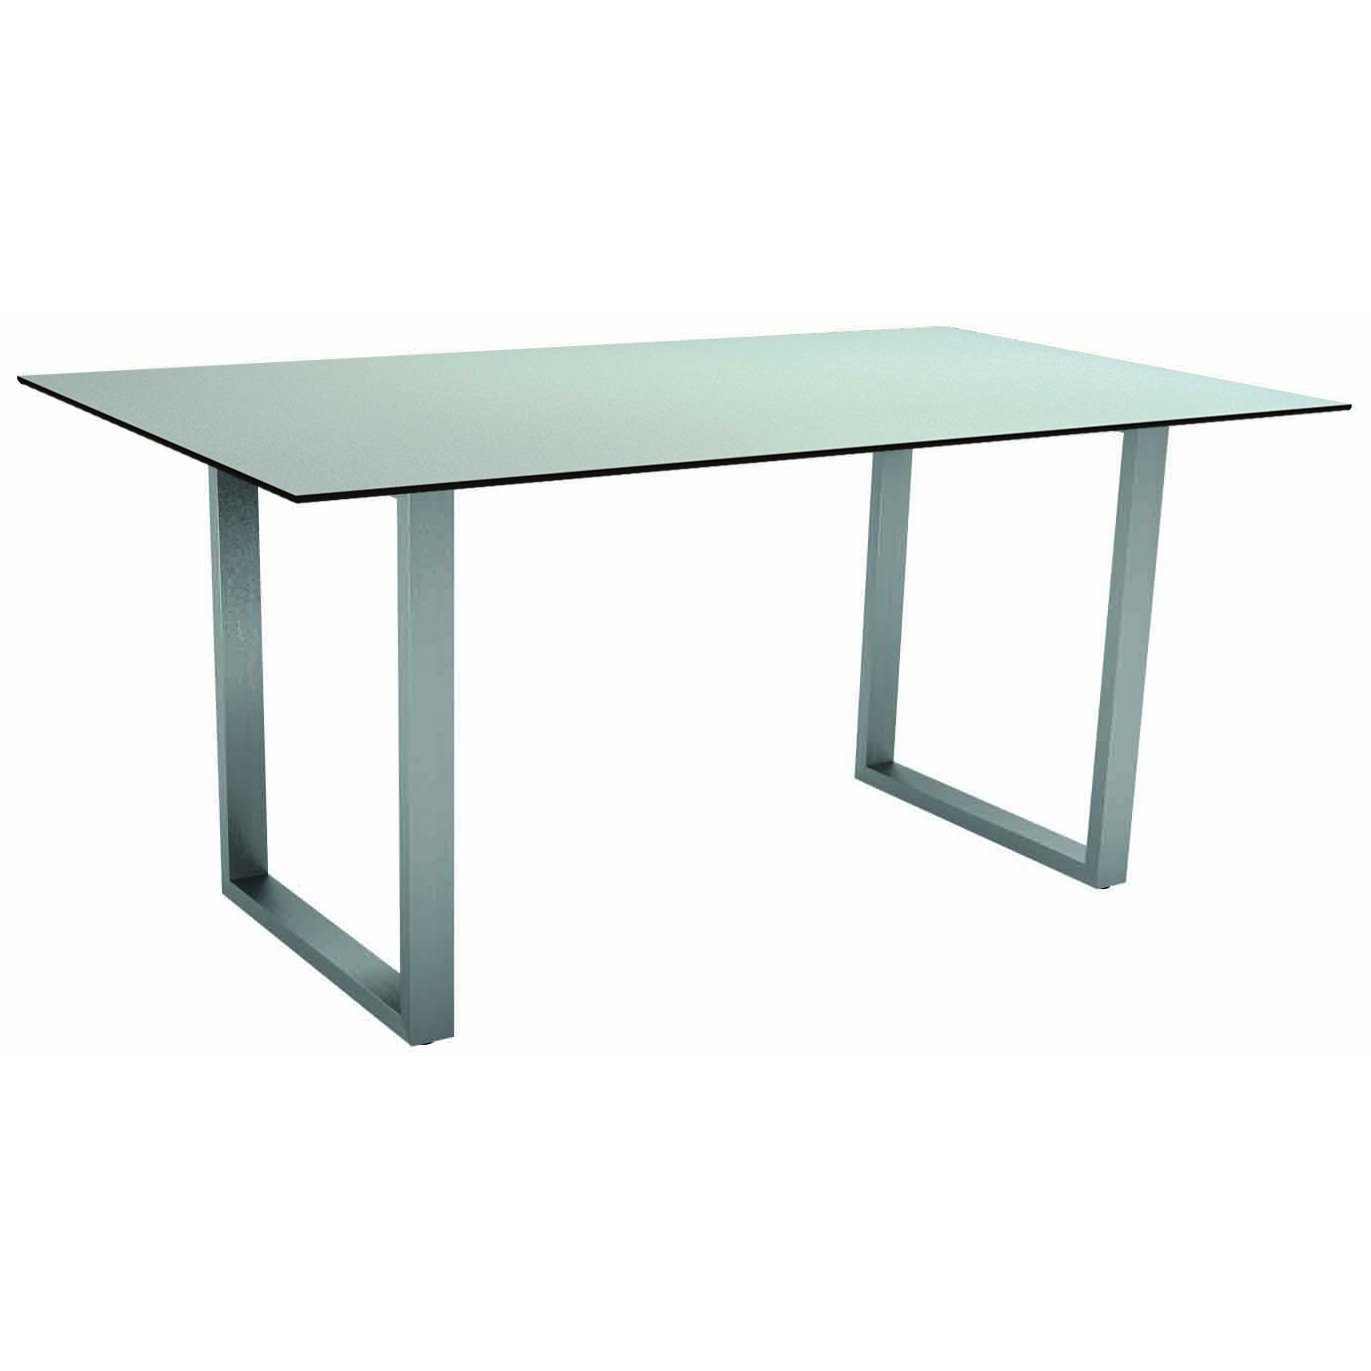 Stern Kufentisch, Gestell Edelstahl, Tischplatte HPL Nordic green, Tischgröße: 160x90 cm